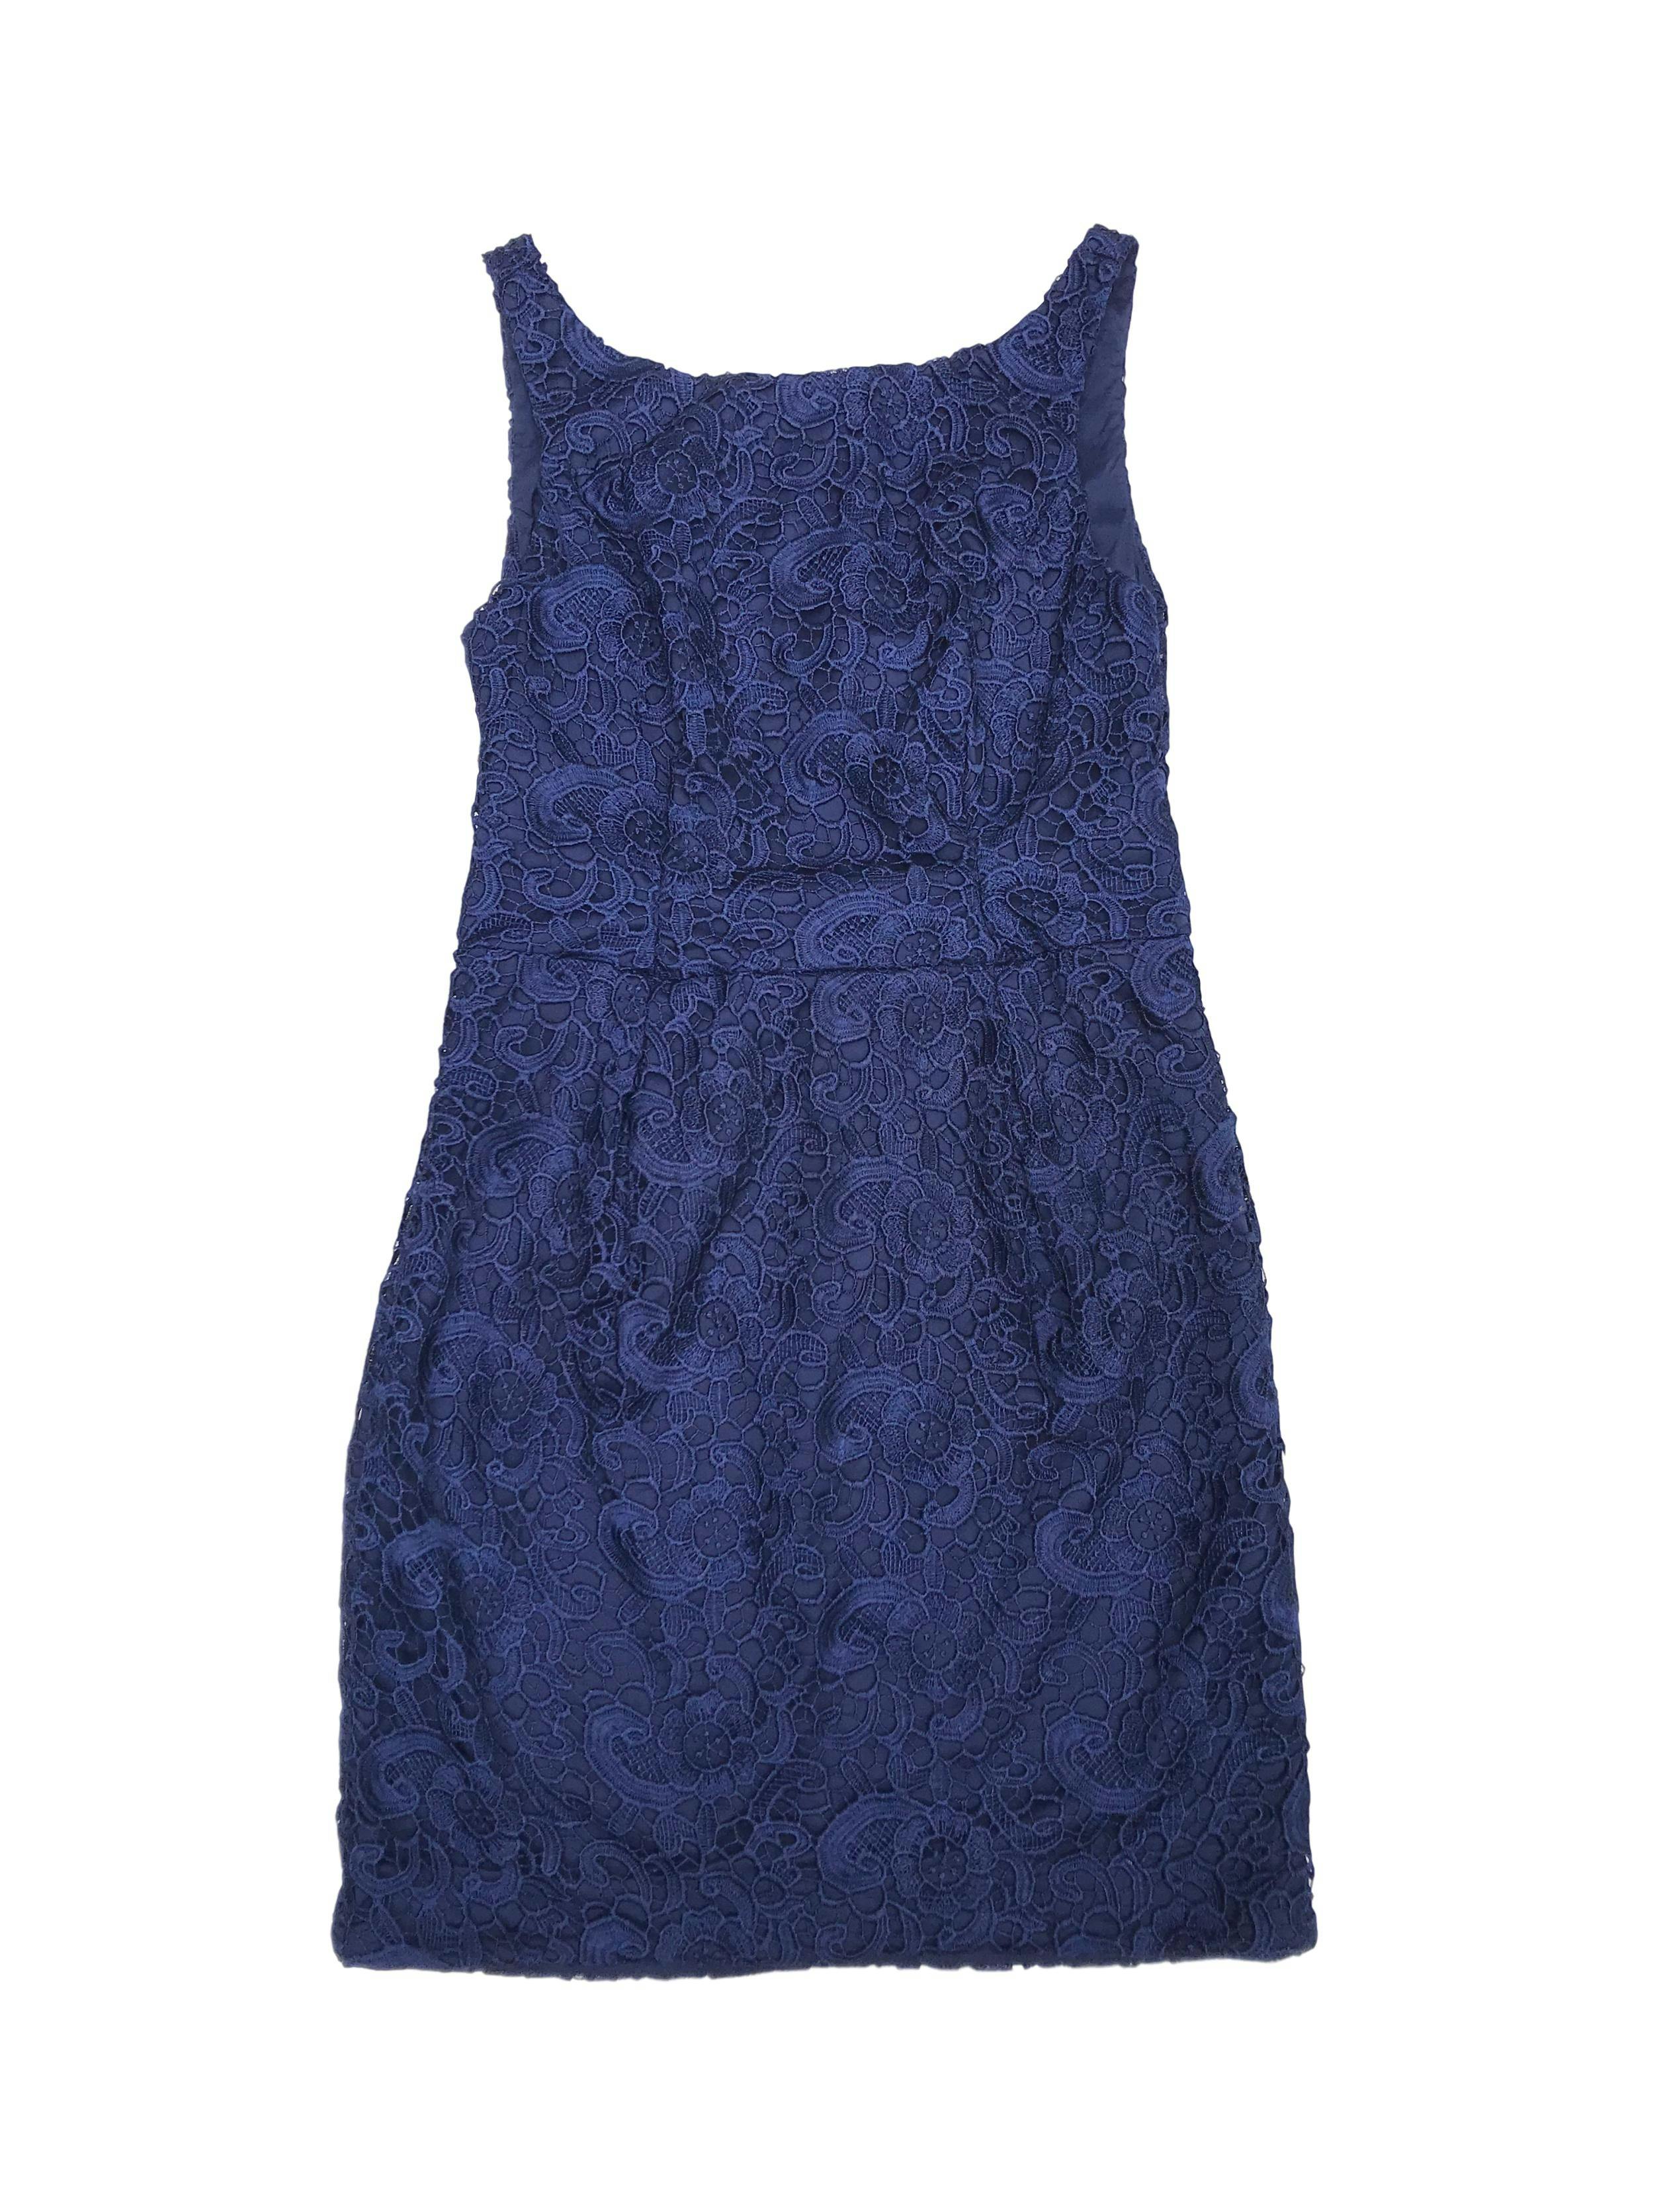 Vestido de encaje azul, forrado, con cierre y escote en la espalda. Nuevo con etiqueta. Precio original S/ 500